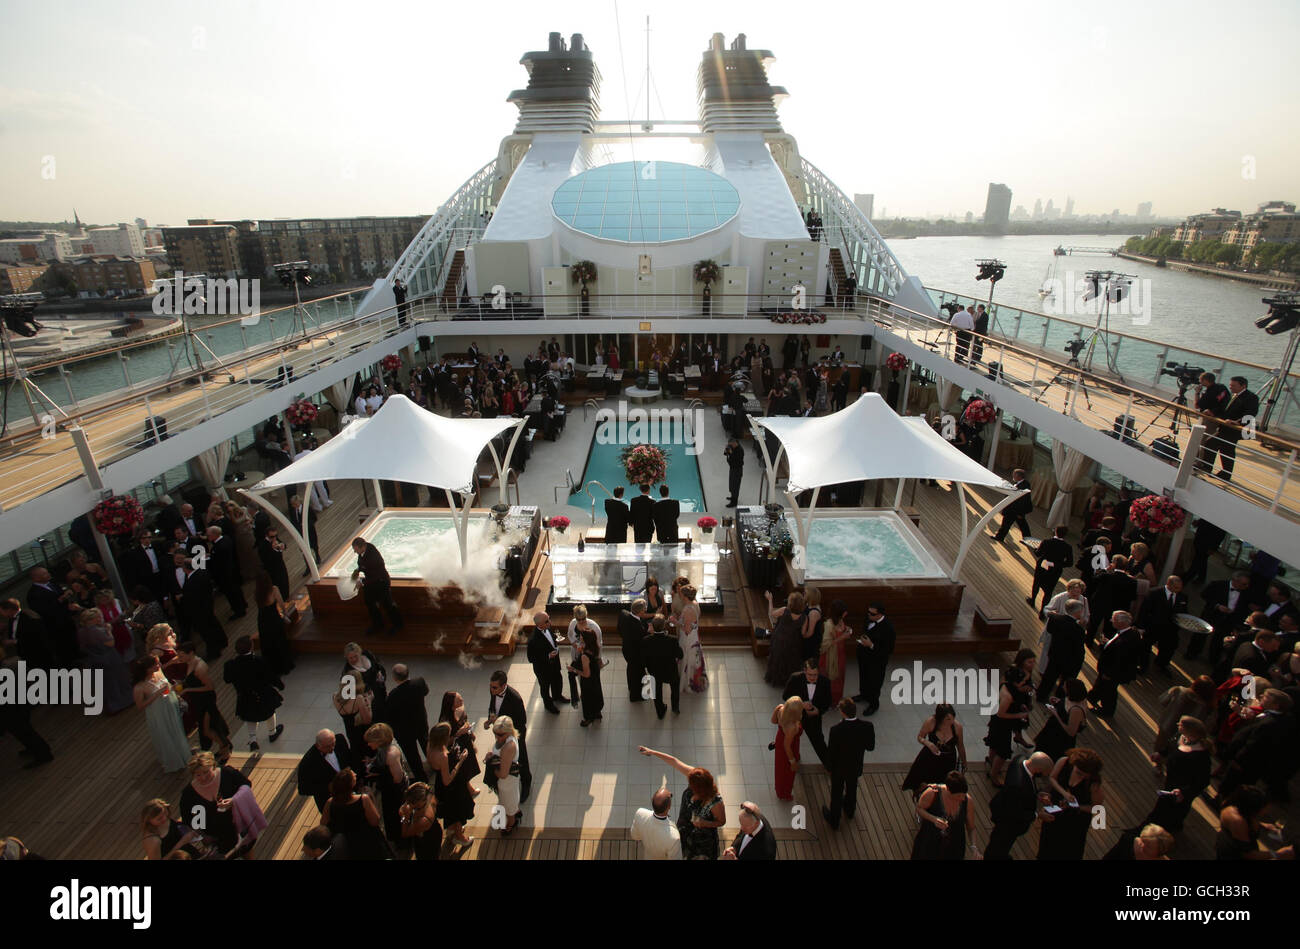 Les clients embarquent à bord du bateau de croisière de luxe Seabourn avant sa cérémonie de désignation, sur la Tamise à Londres. Banque D'Images